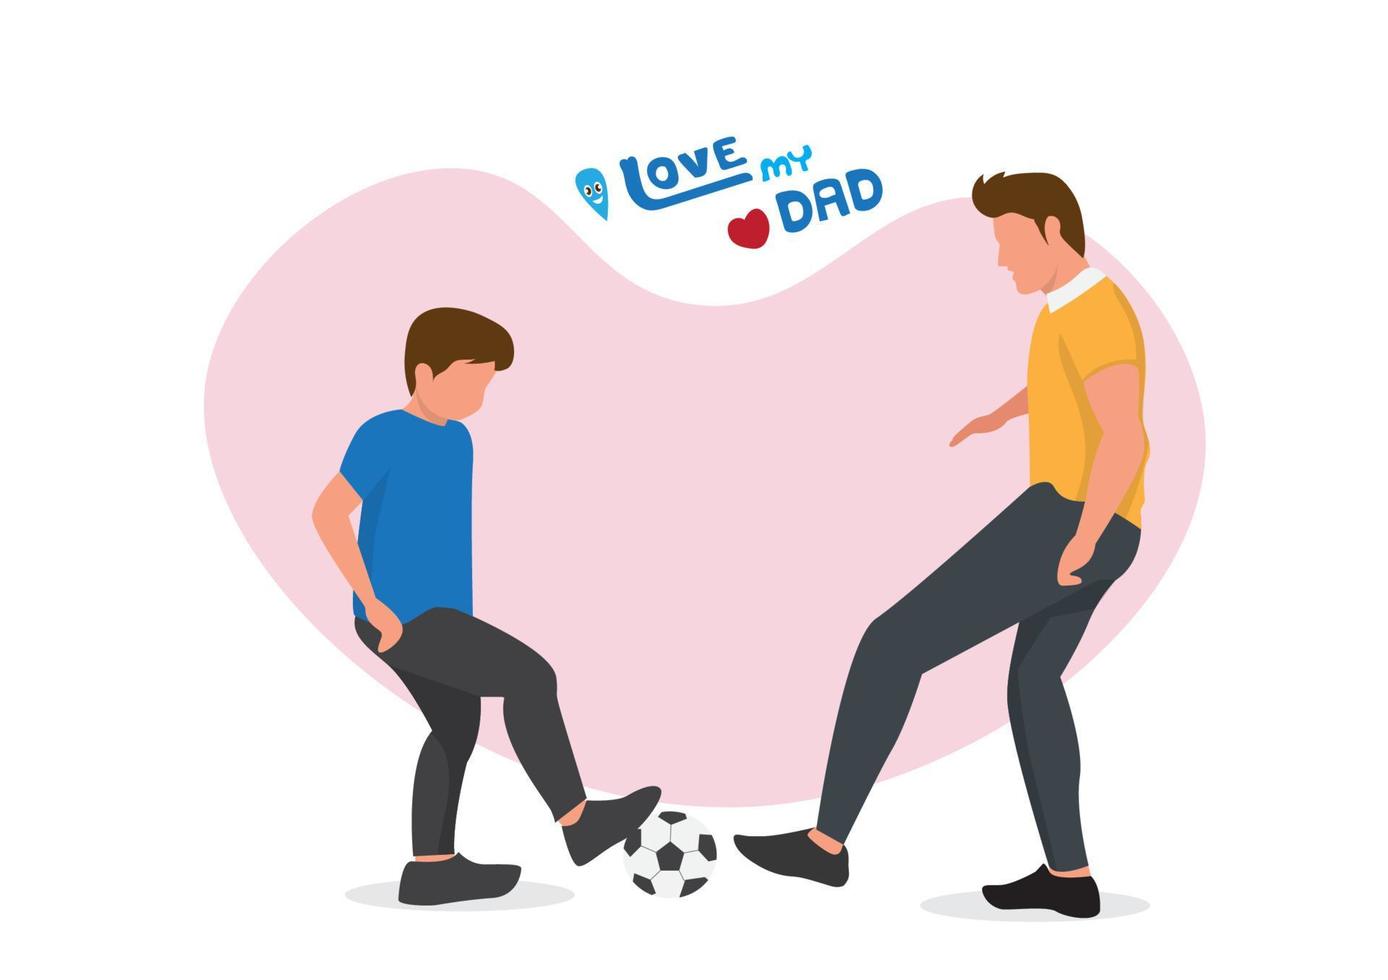 pojken och hans far spelar fotboll på lekplatsen. faderskapskoncept en glad far leker med sin lilla pojke. platt stil tecknad vektorillustration vektor